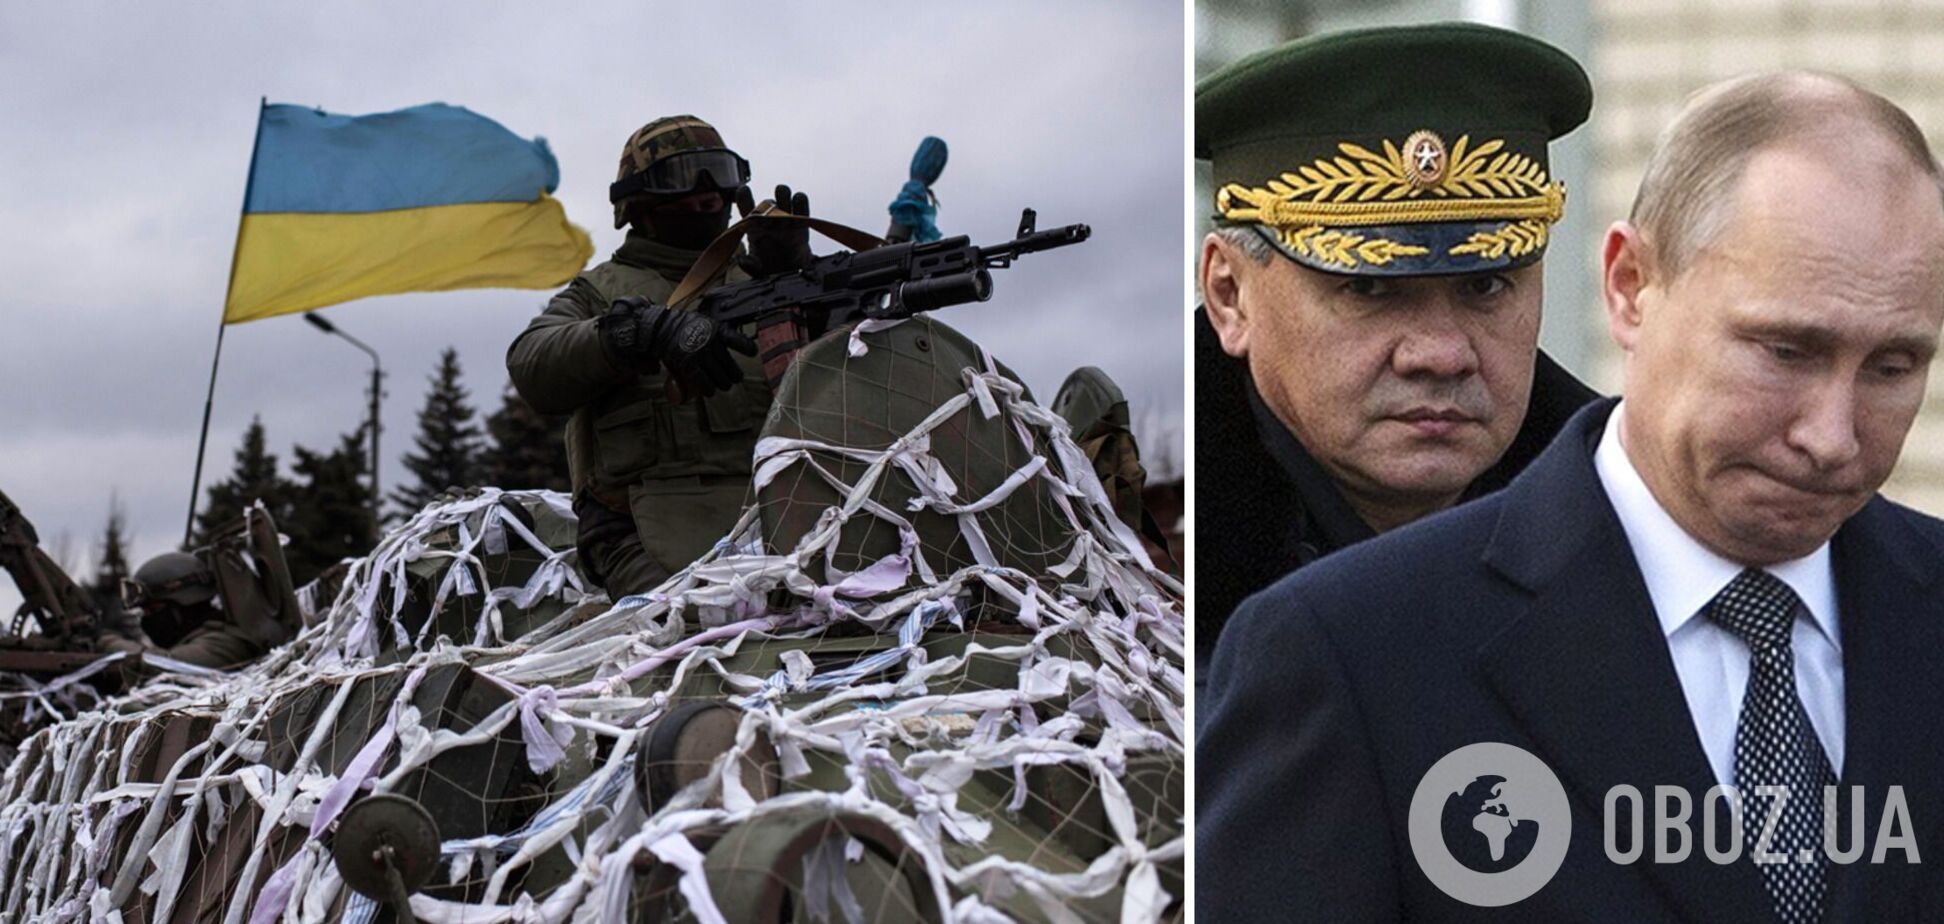 Врут оба: Шойгу опозорился заявлением о 'потерях' Украины на войне и подставил Конашенкова